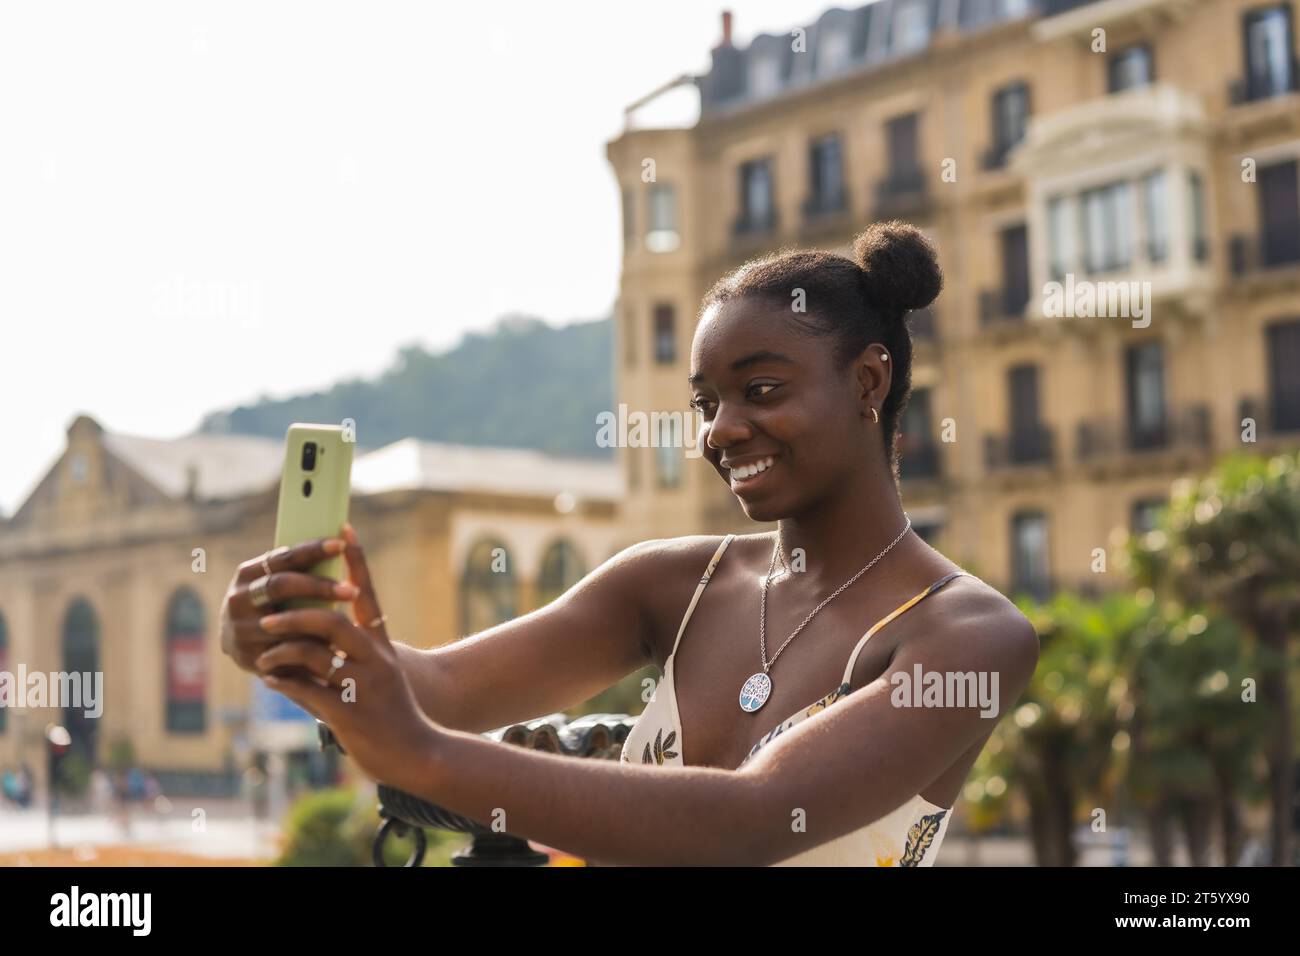 Vue latérale d'une jolie jeune femme africaine prenant un selfie dans la rue Banque D'Images